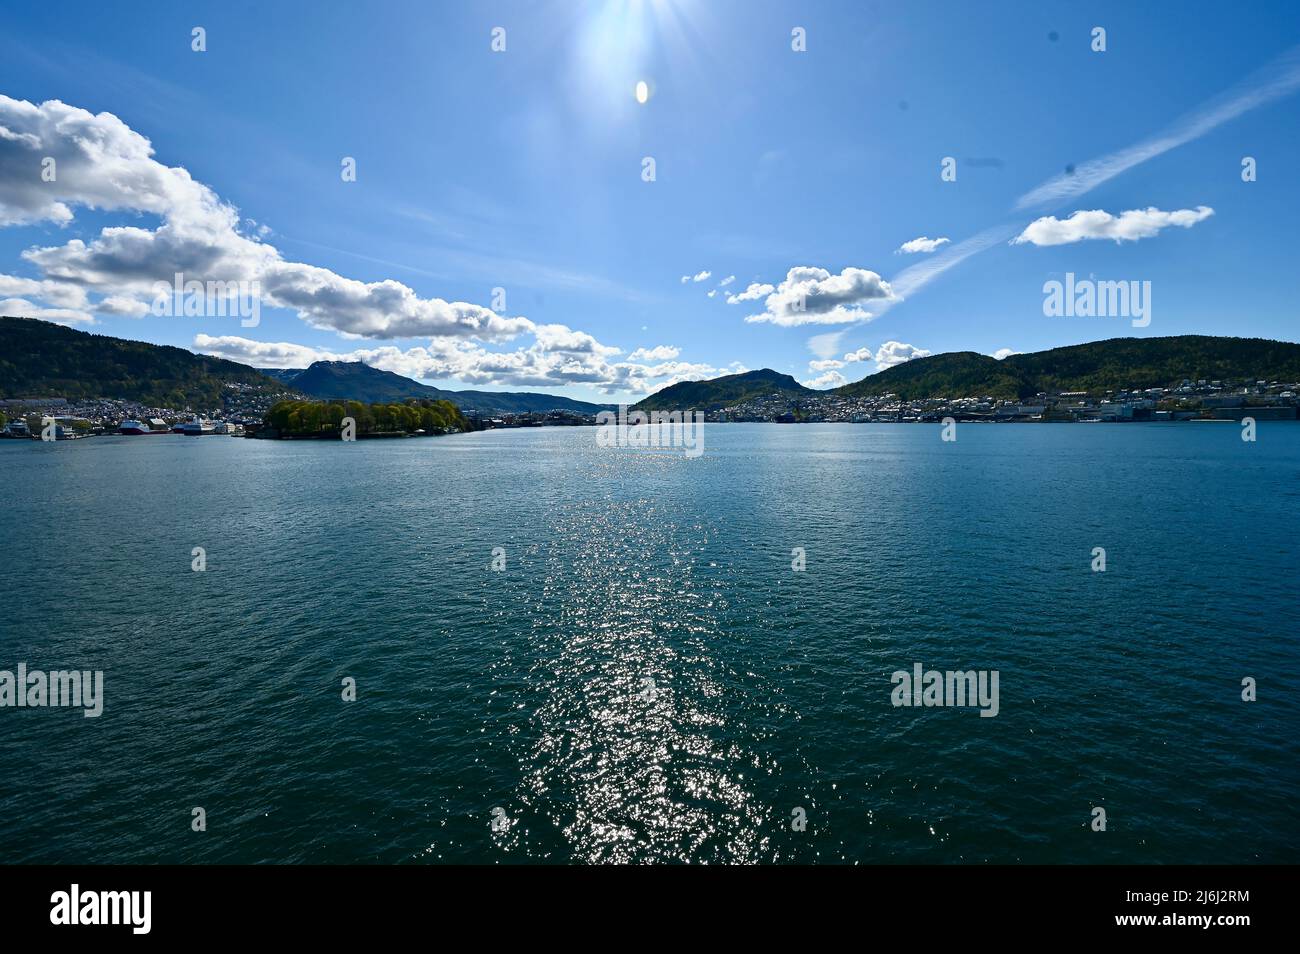 wunderschöne WasserreflectionenDurchquerung eines norwegischen Fjords Foto de stock